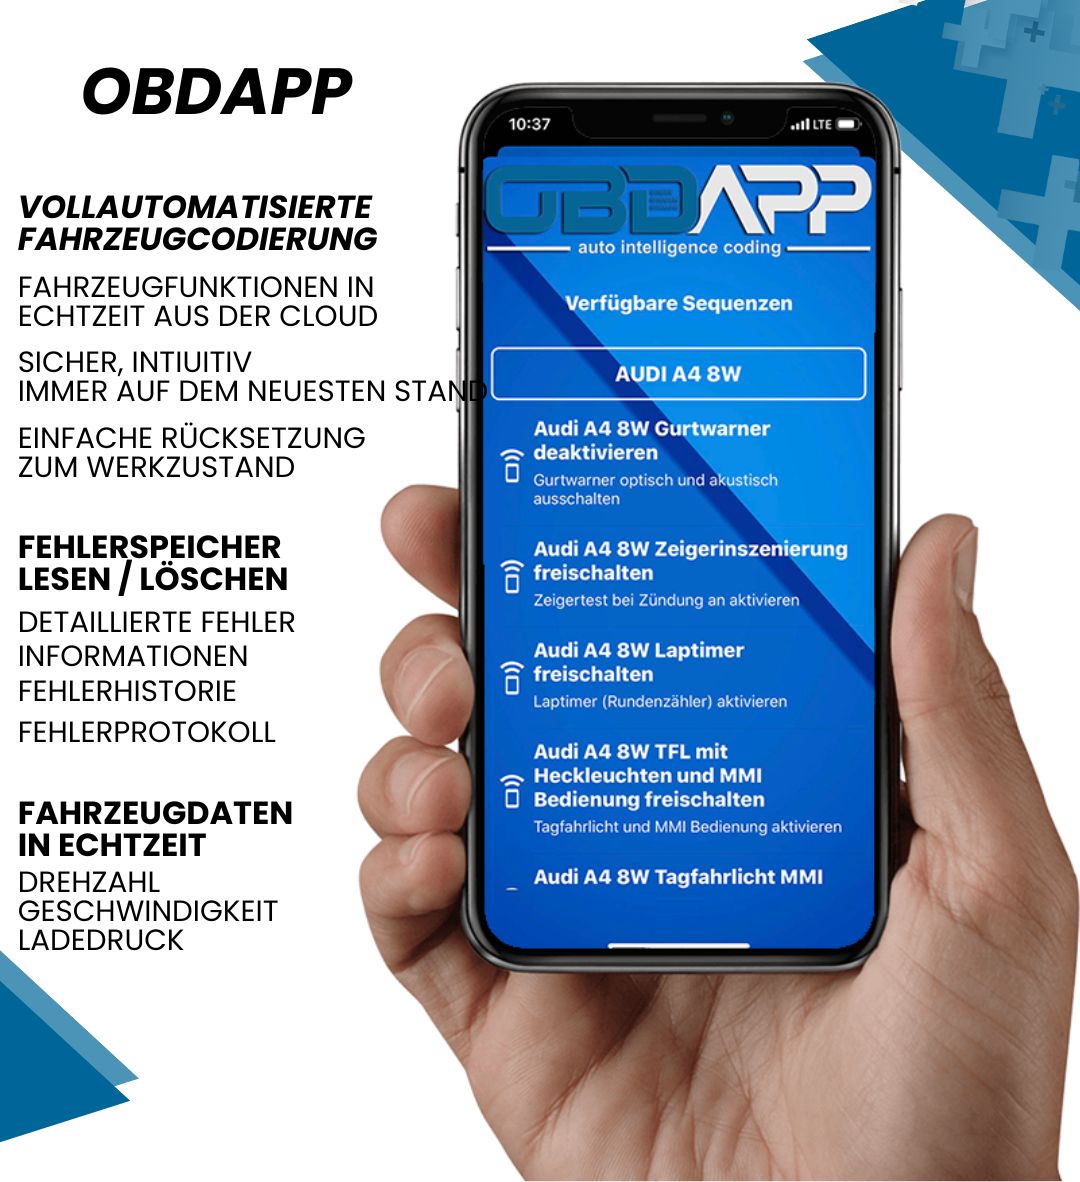 OBDAPP Shop - OBDAPP Shop